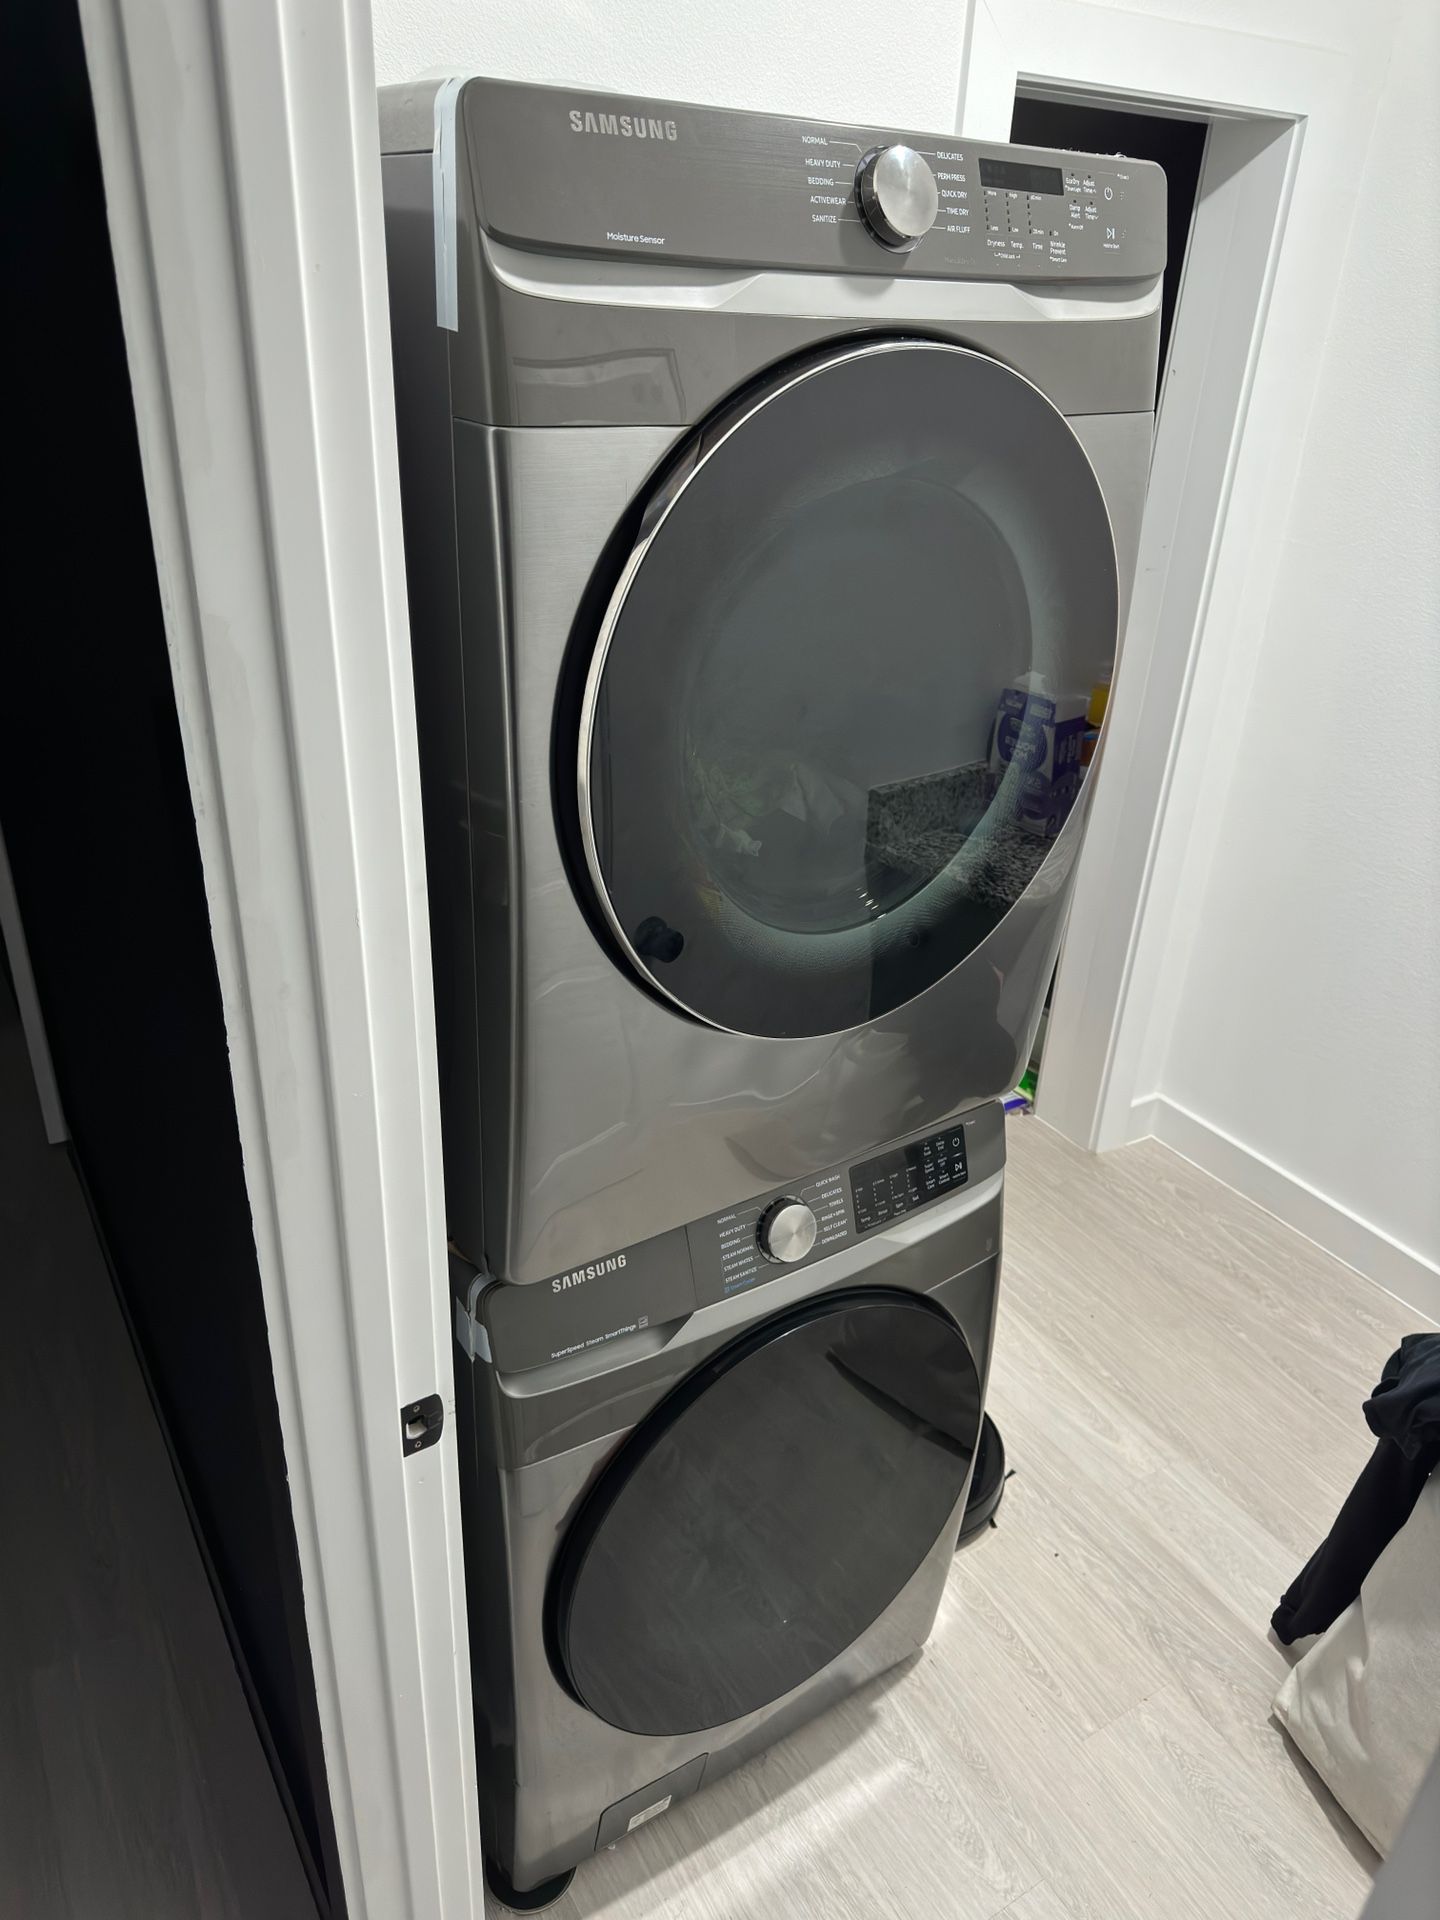 Samsung Washer & Dryer Set For Sale